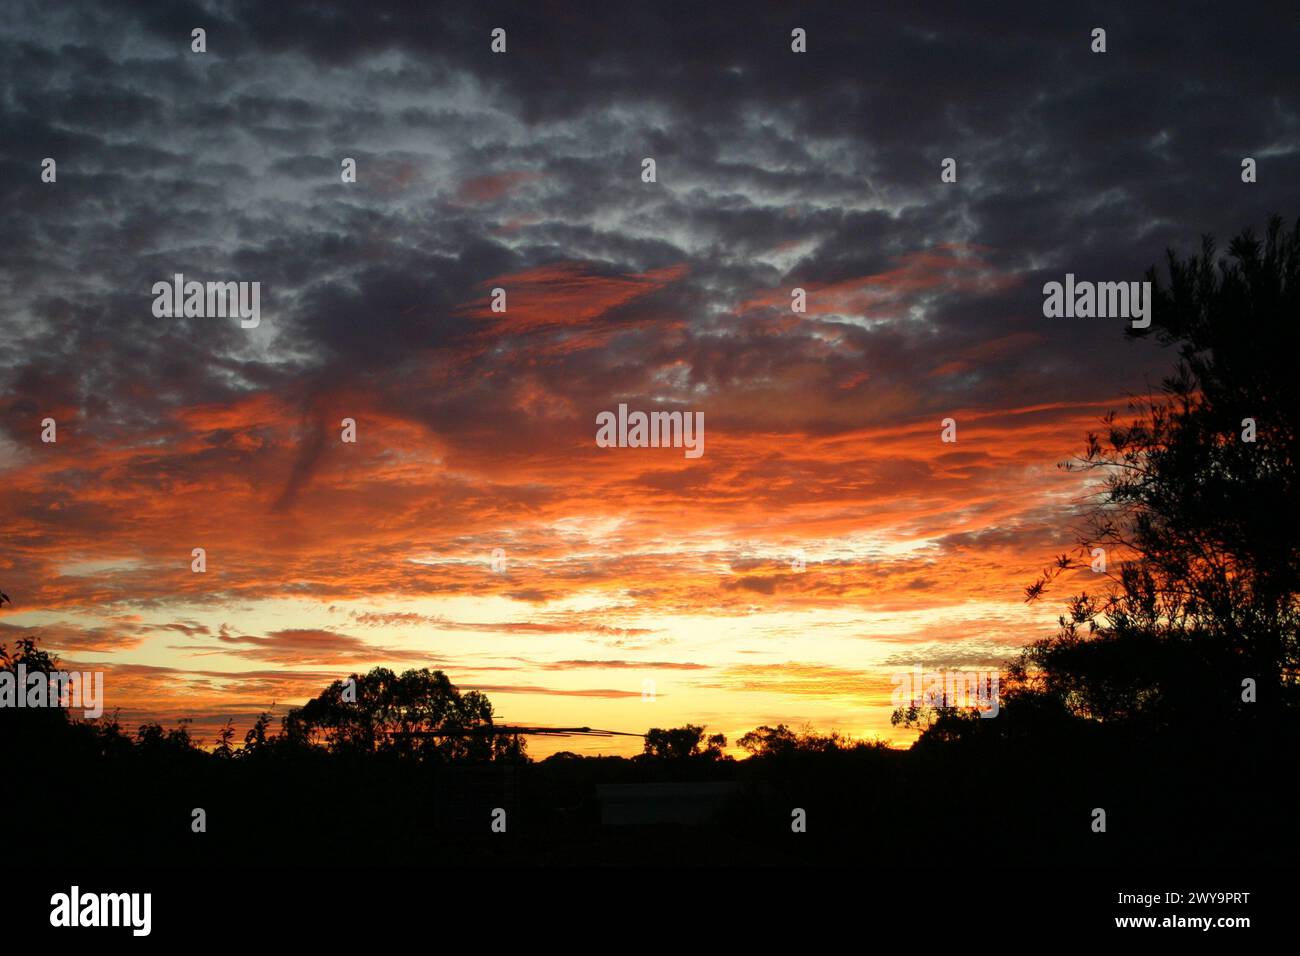 Sonnenuntergang mit Silhouettenbäumen und einer dunkelorangen Reflexion auf den Wolken. Stockfoto